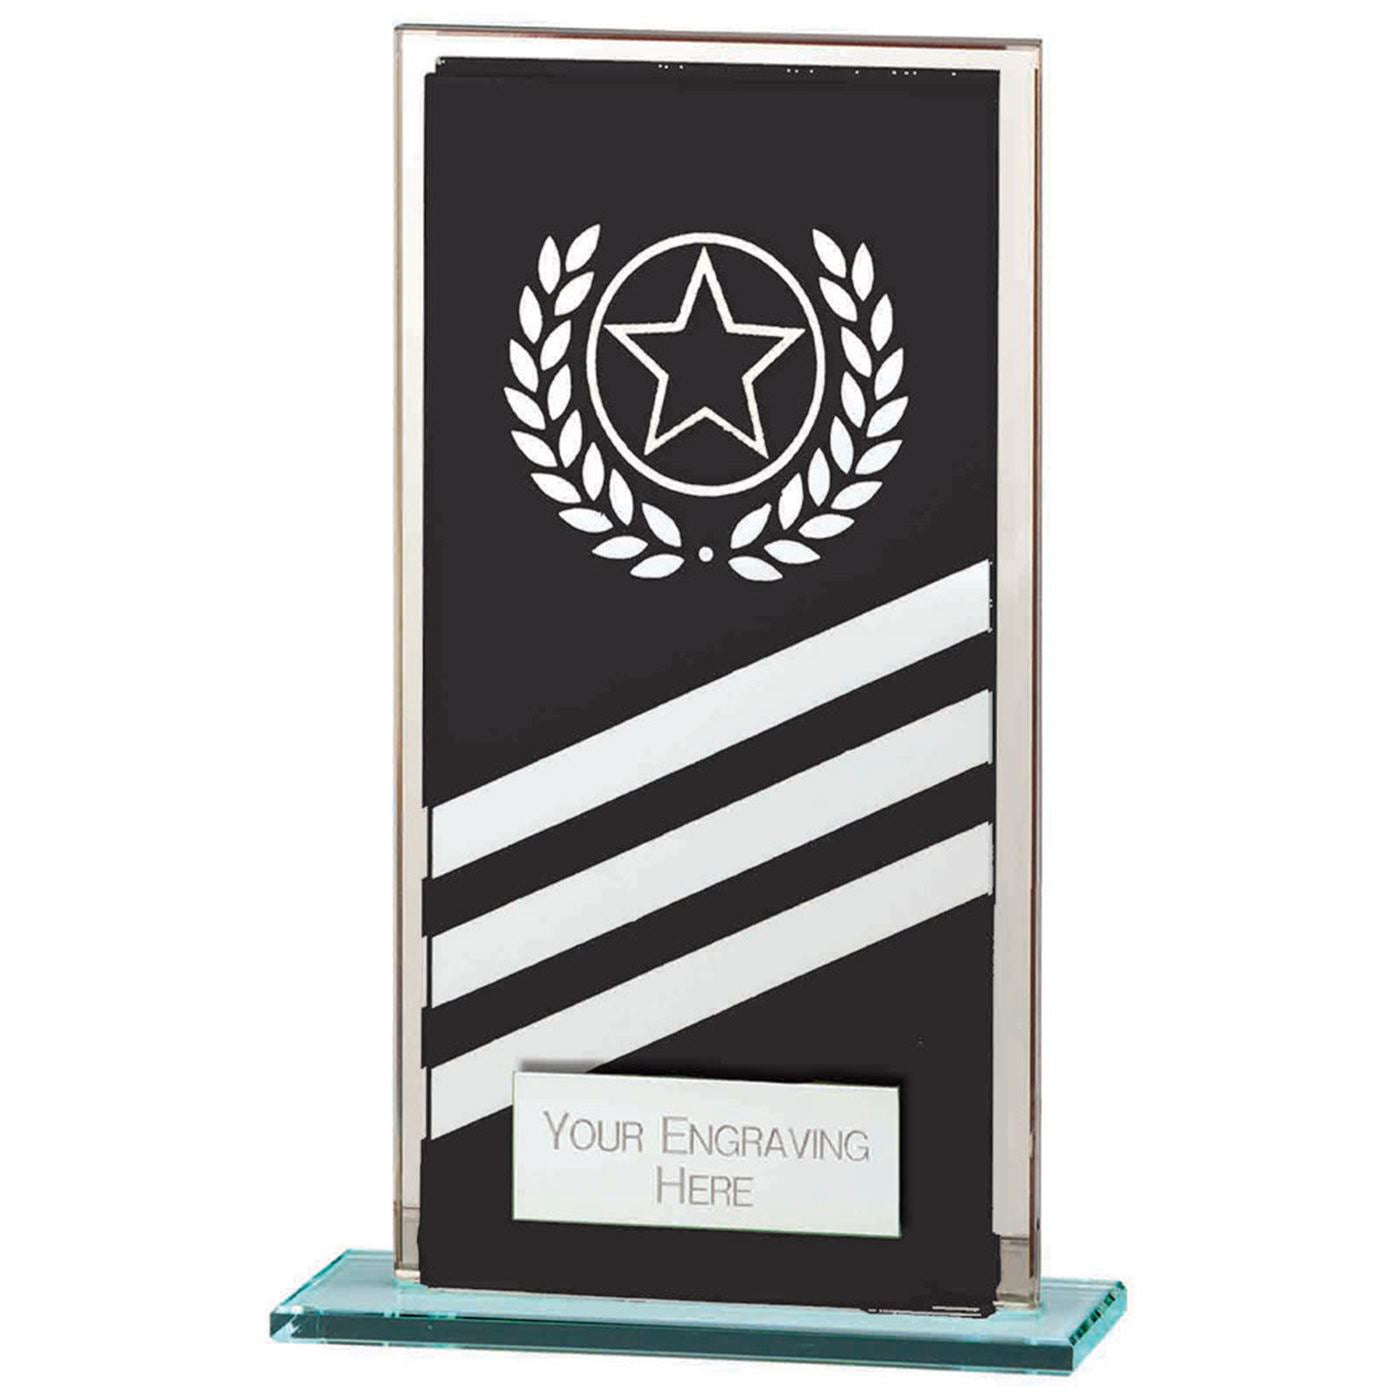 Talisman Mirror Glass Award Black & Silver